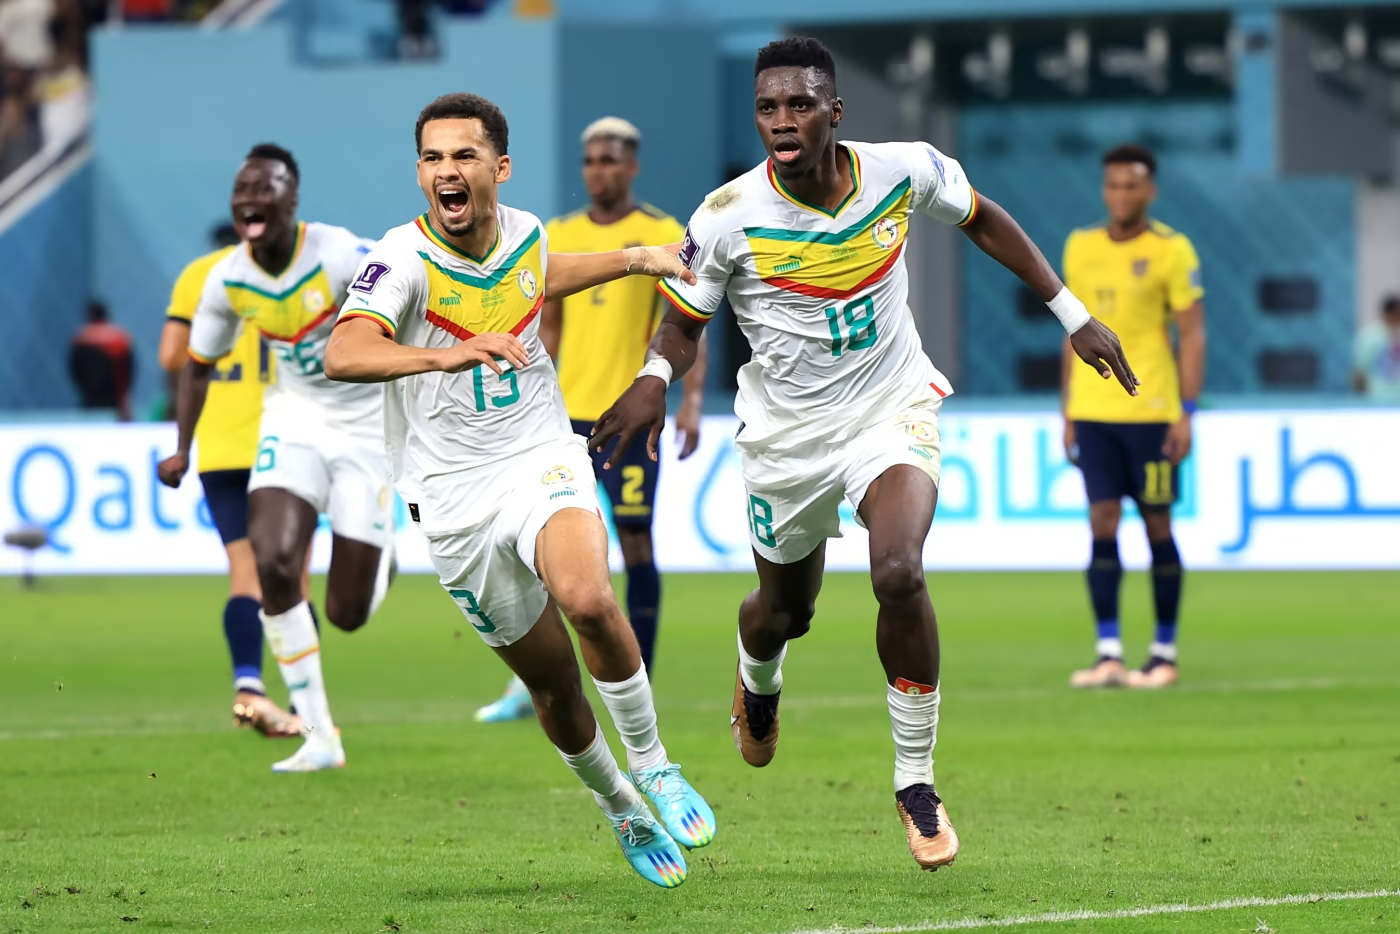 Ecuador eliminado del Mundial de Catar 2022 tras caer 2-1 ante Senegal |  Diario Digital Nuestro País